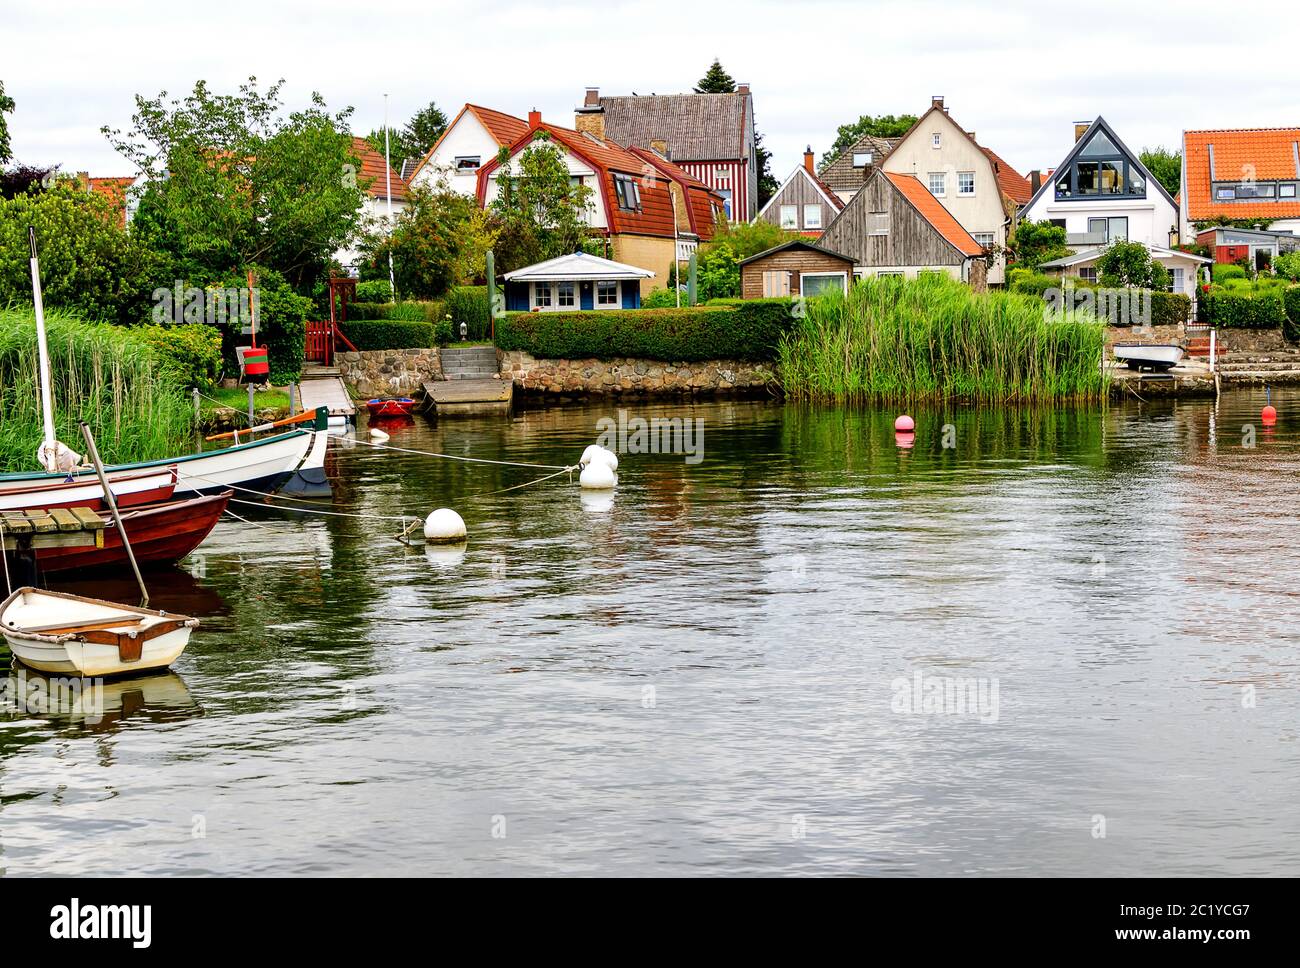 Le romantique petit village de pêcheurs historique Holm est le plus ancien district du Schleswig, en Allemagne Banque D'Images